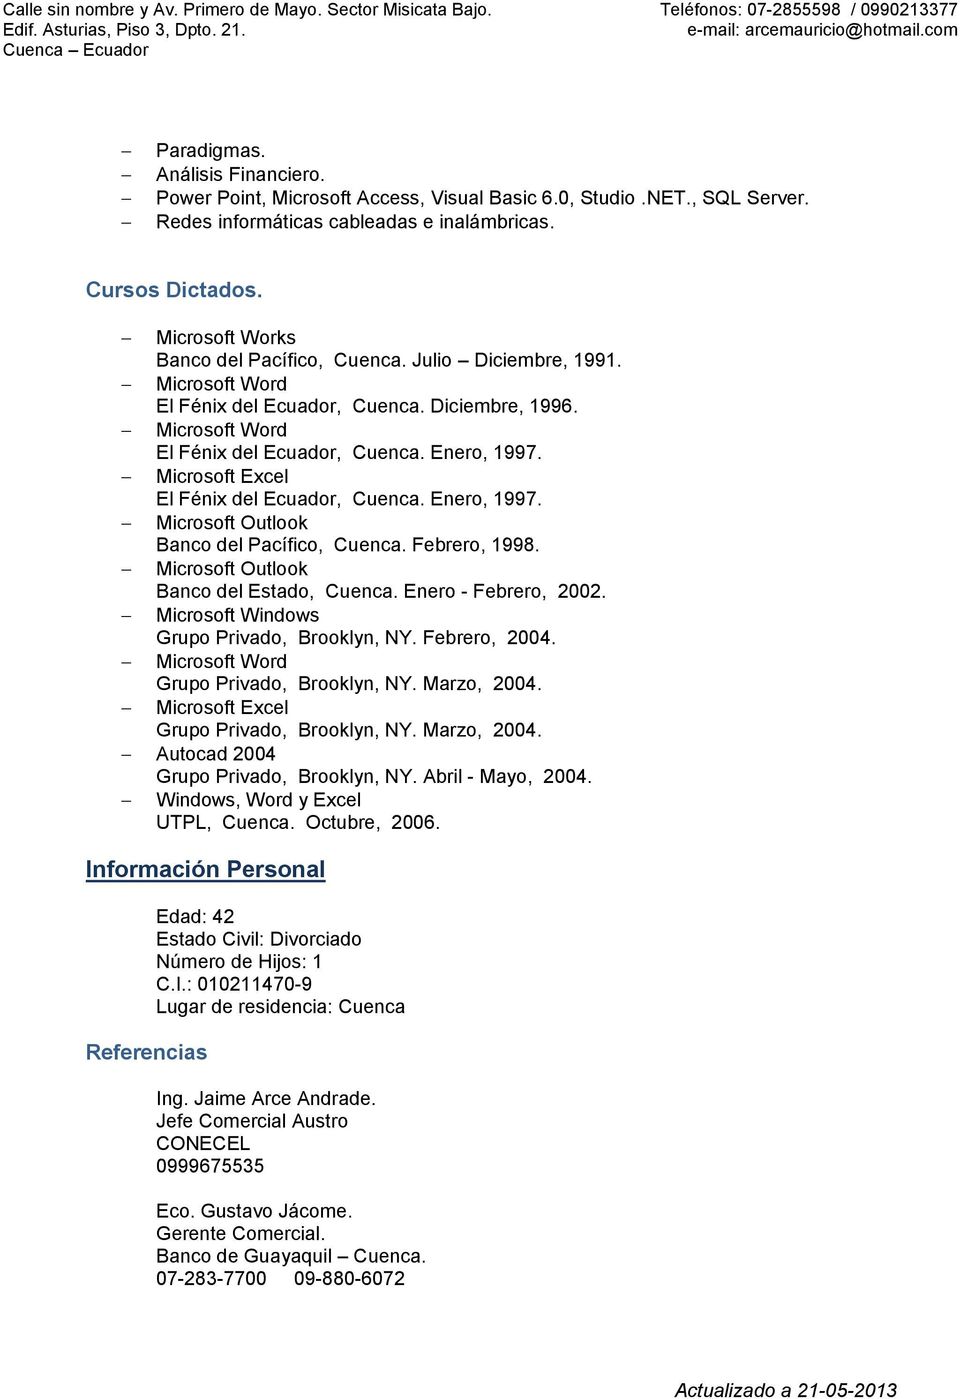 Microsoft Excel El Fénix del Ecuador, Cuenca. Enero, 1997. Microsoft Outlook Banco del Pacífico, Cuenca. Febrero, 1998. Microsoft Outlook Banco del Estado, Cuenca. Enero - Febrero, 2002.